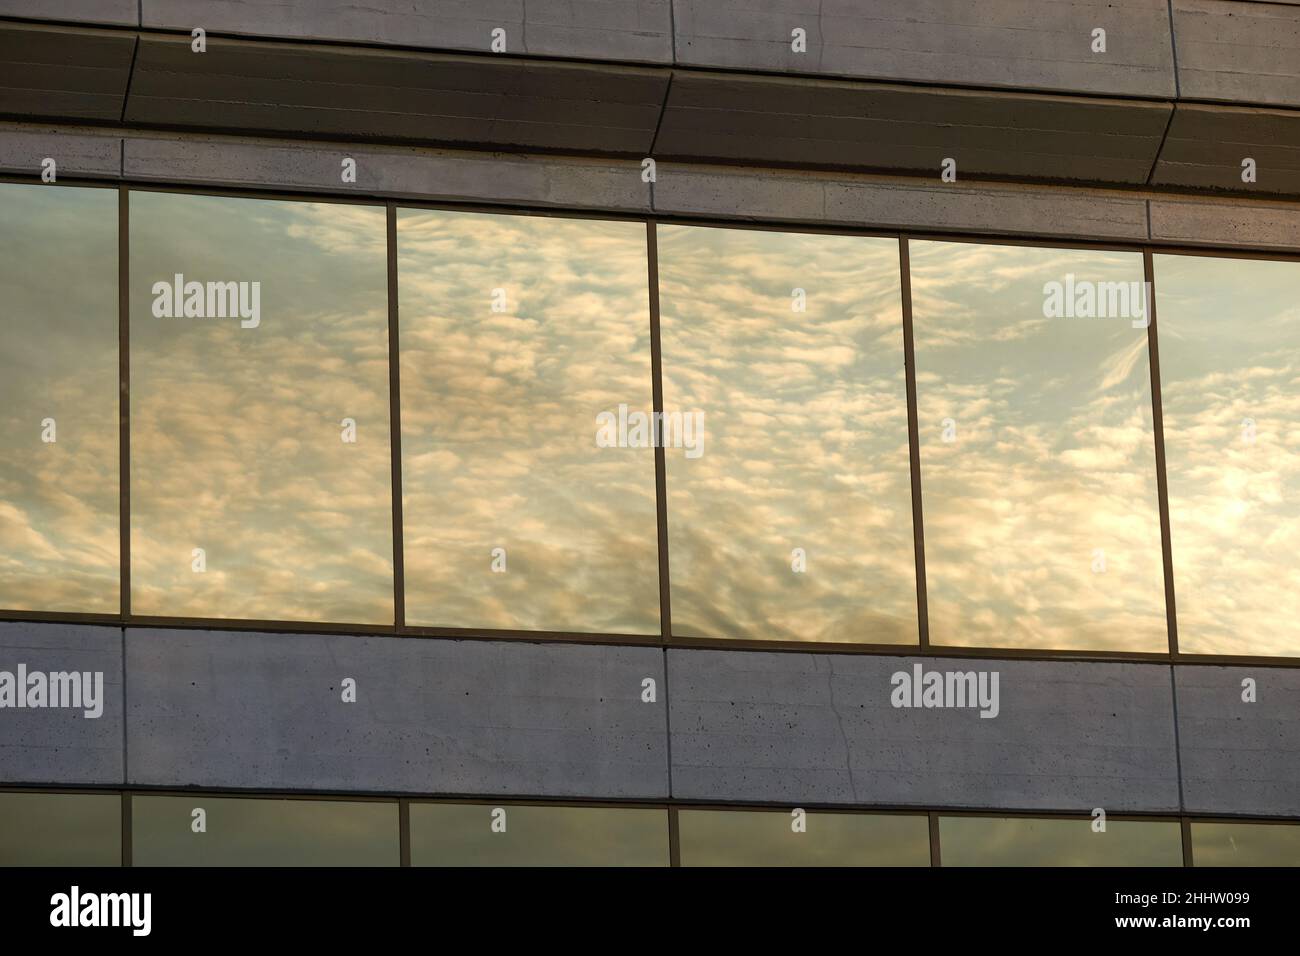 Des nuages blancs rêveux et le ciel se reflètent dans les fenêtres d'un immeuble de bureaux moderne en béton Banque D'Images